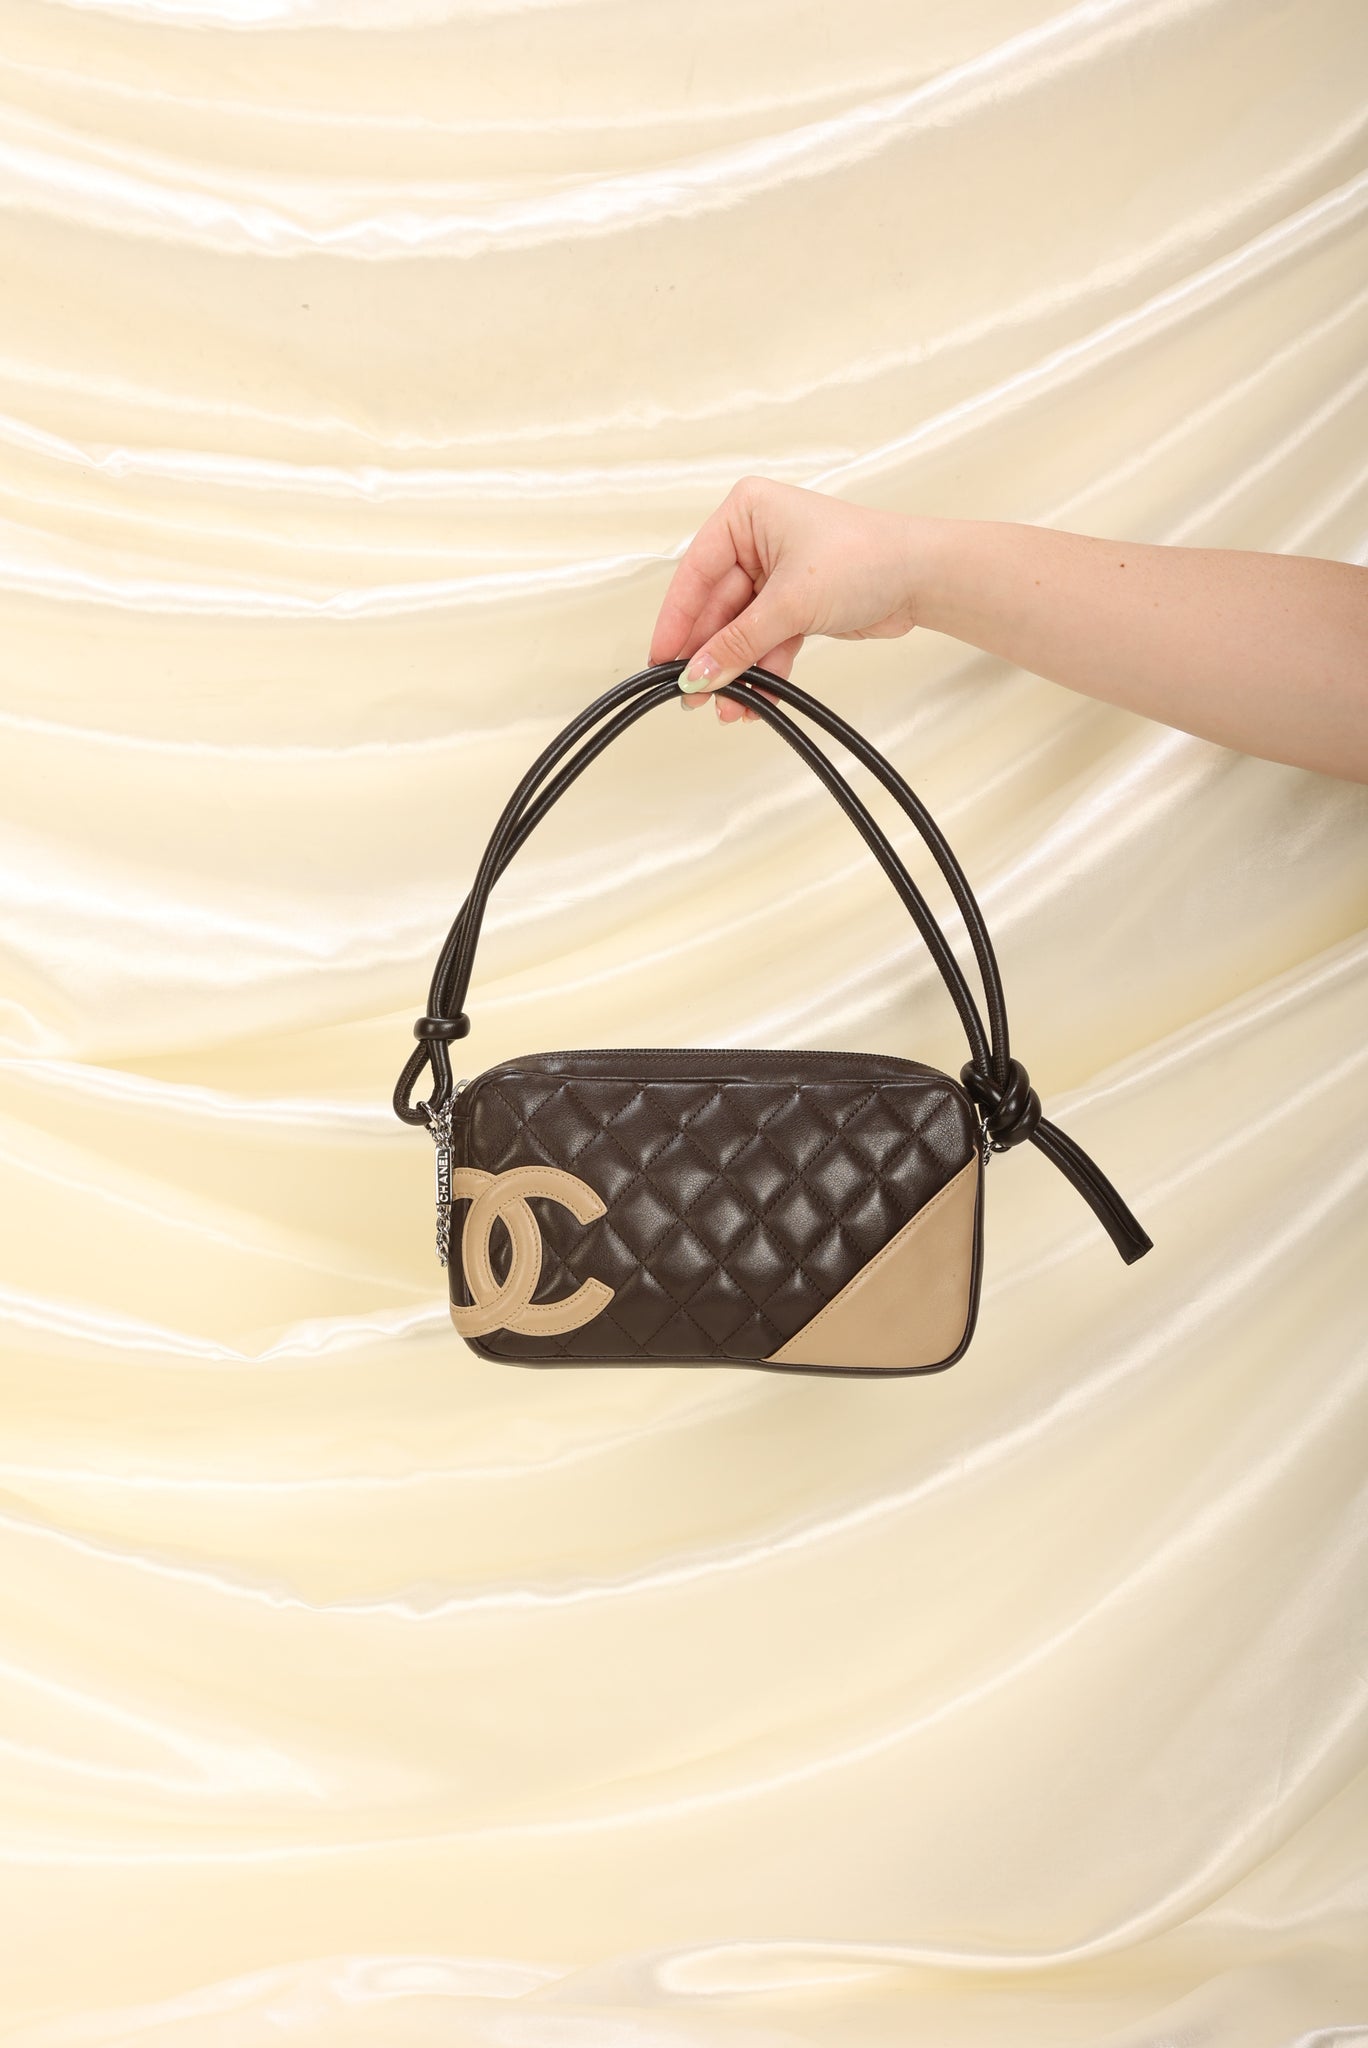 Chanel Calfskin Quilted Cambon Ligne Pochette Fashion Women